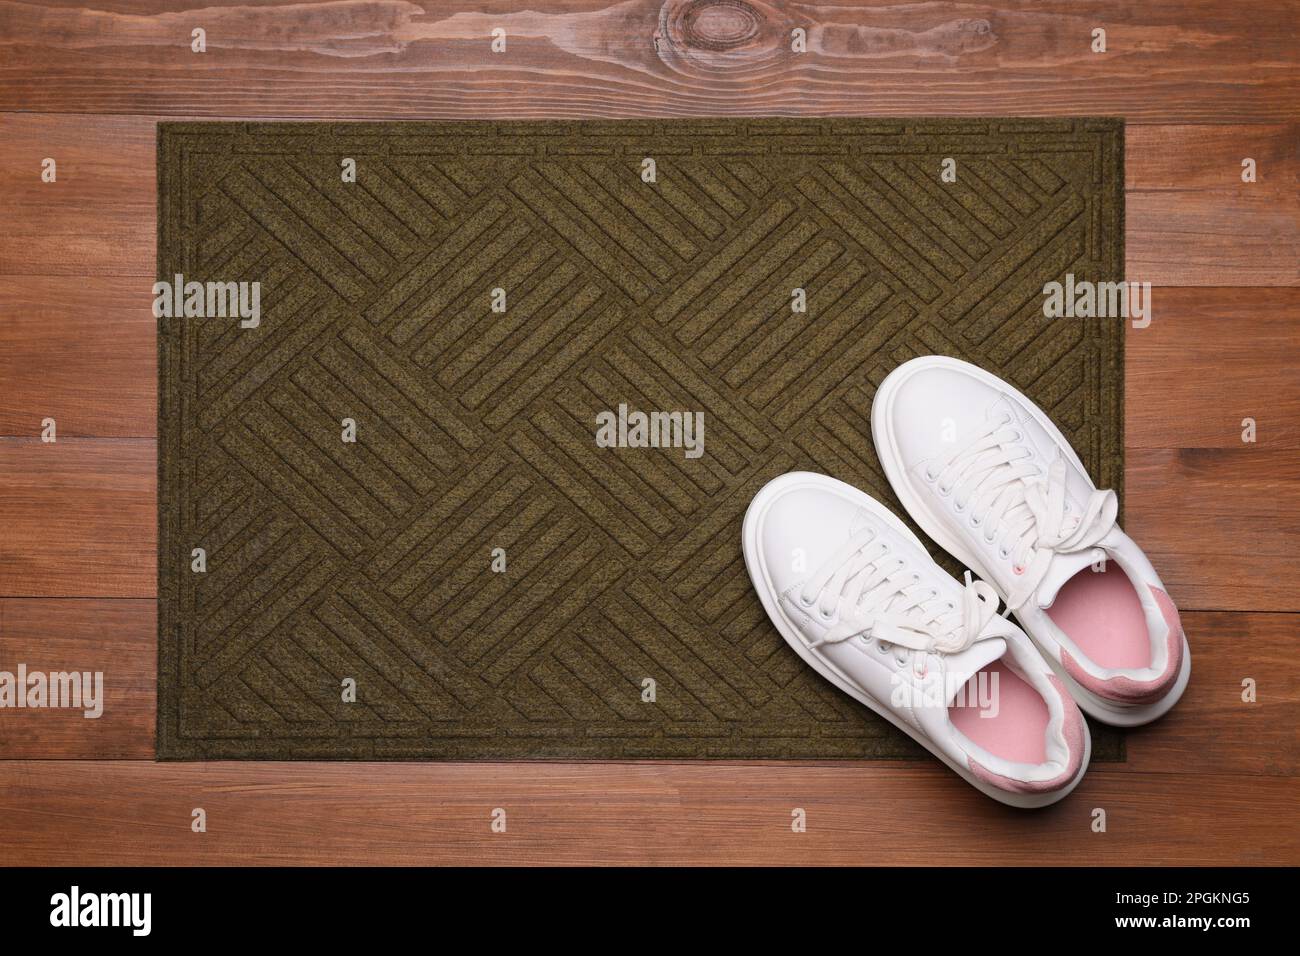 Nouveau tapis de porte propre avec patins sur plancher en bois, plat Banque D'Images